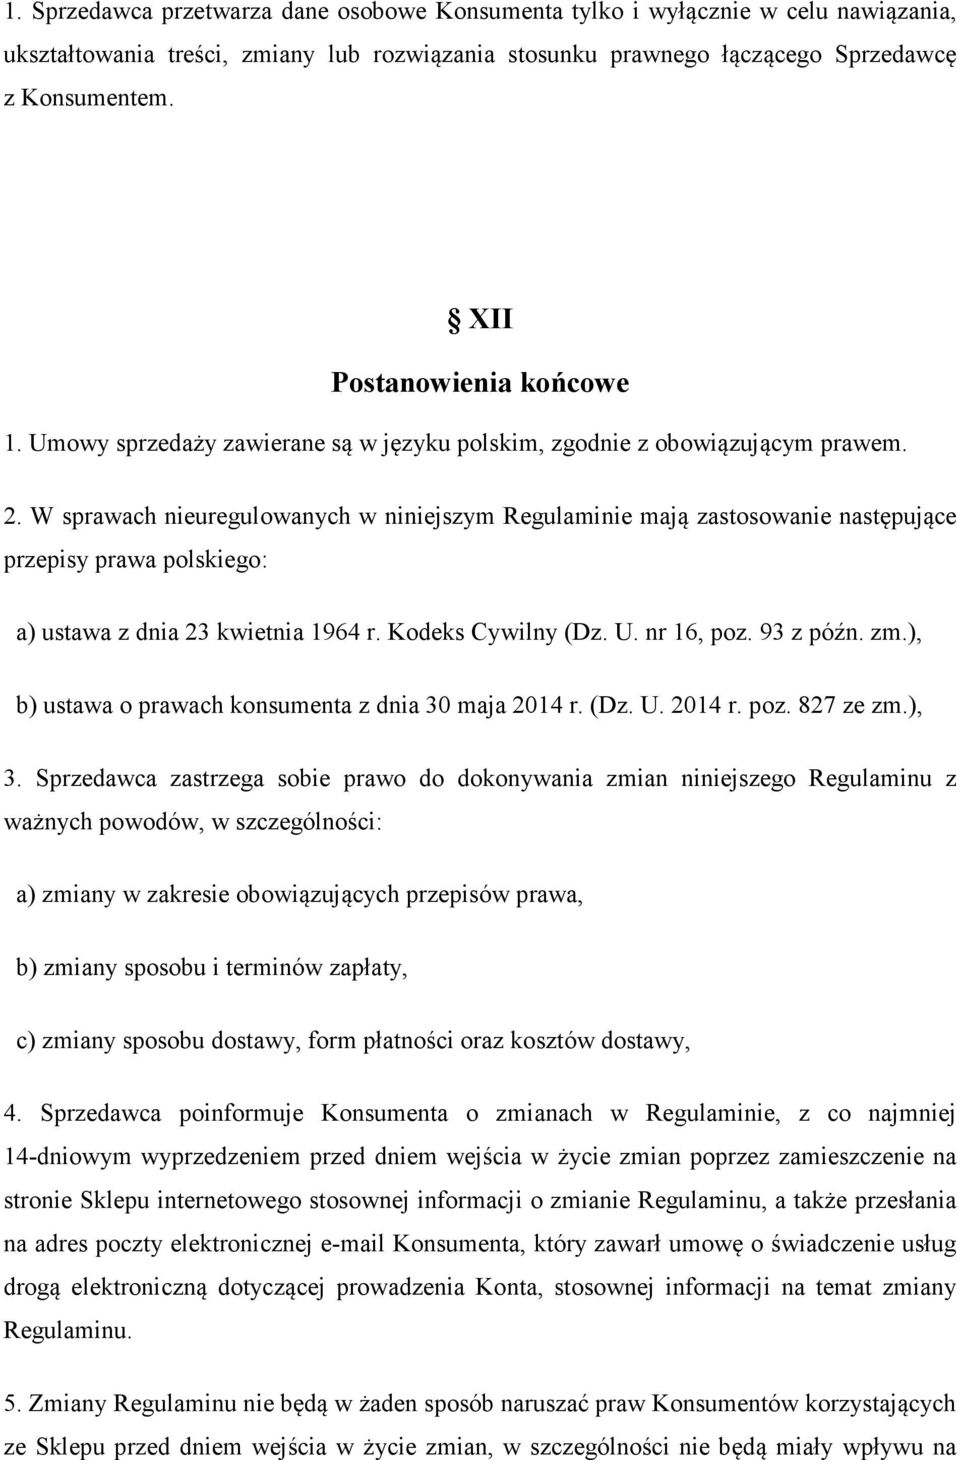 W sprawach nieuregulowanych w niniejszym Regulaminie mają zastosowanie następujące przepisy prawa polskiego: a) ustawa z dnia 23 kwietnia 1964 r. Kodeks Cywilny (Dz. U. nr 16, poz. 93 z późn. zm.